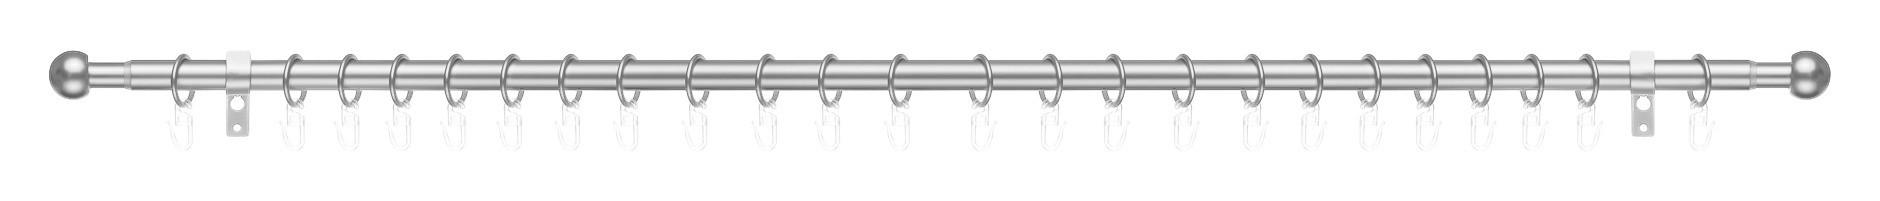 Gardinenstange Kugel Chrom Metall D: ca. 2 cm ausziehbar von ca. 130 bis 240 cm 1.0 Läufe